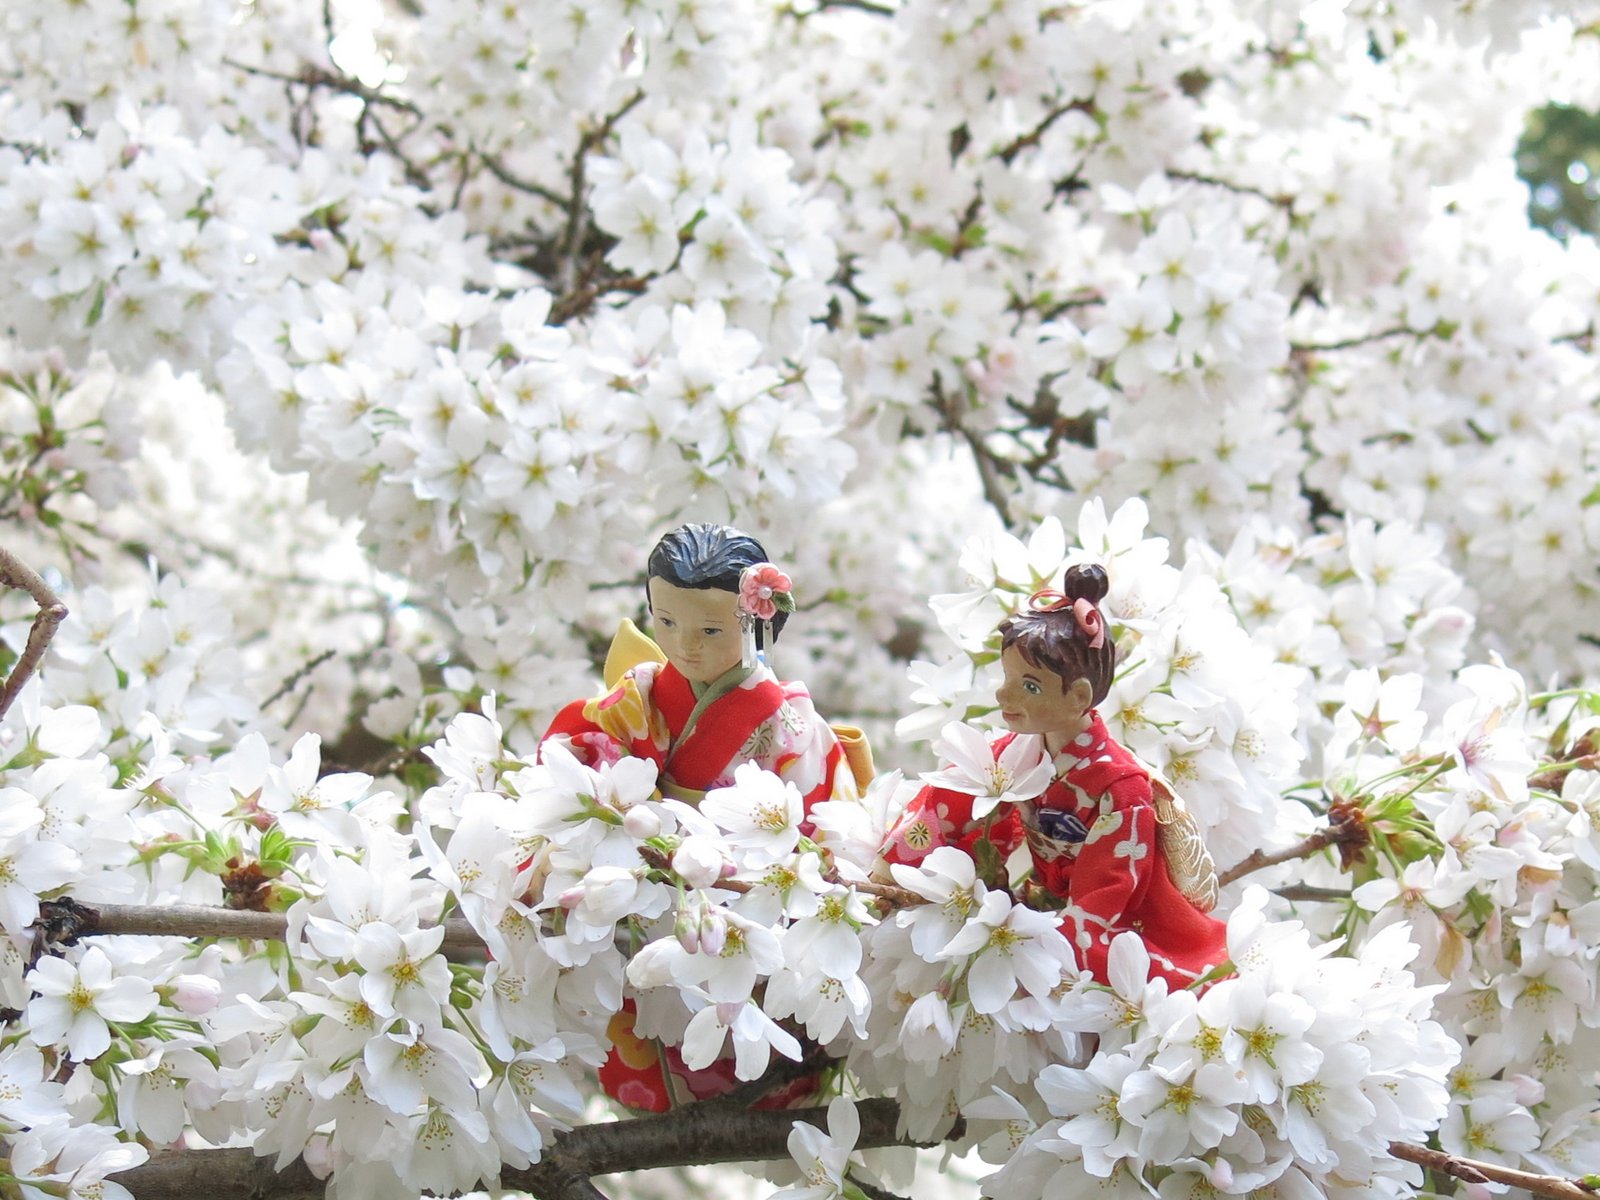 День цветущей сакуры. Праздник цветения вишни Сакуры в Японии. Фестиваль любования сакурой в Японии. Фестиваль цветения Сакуры в Японии. Ханами – любование сакурой в Японии.